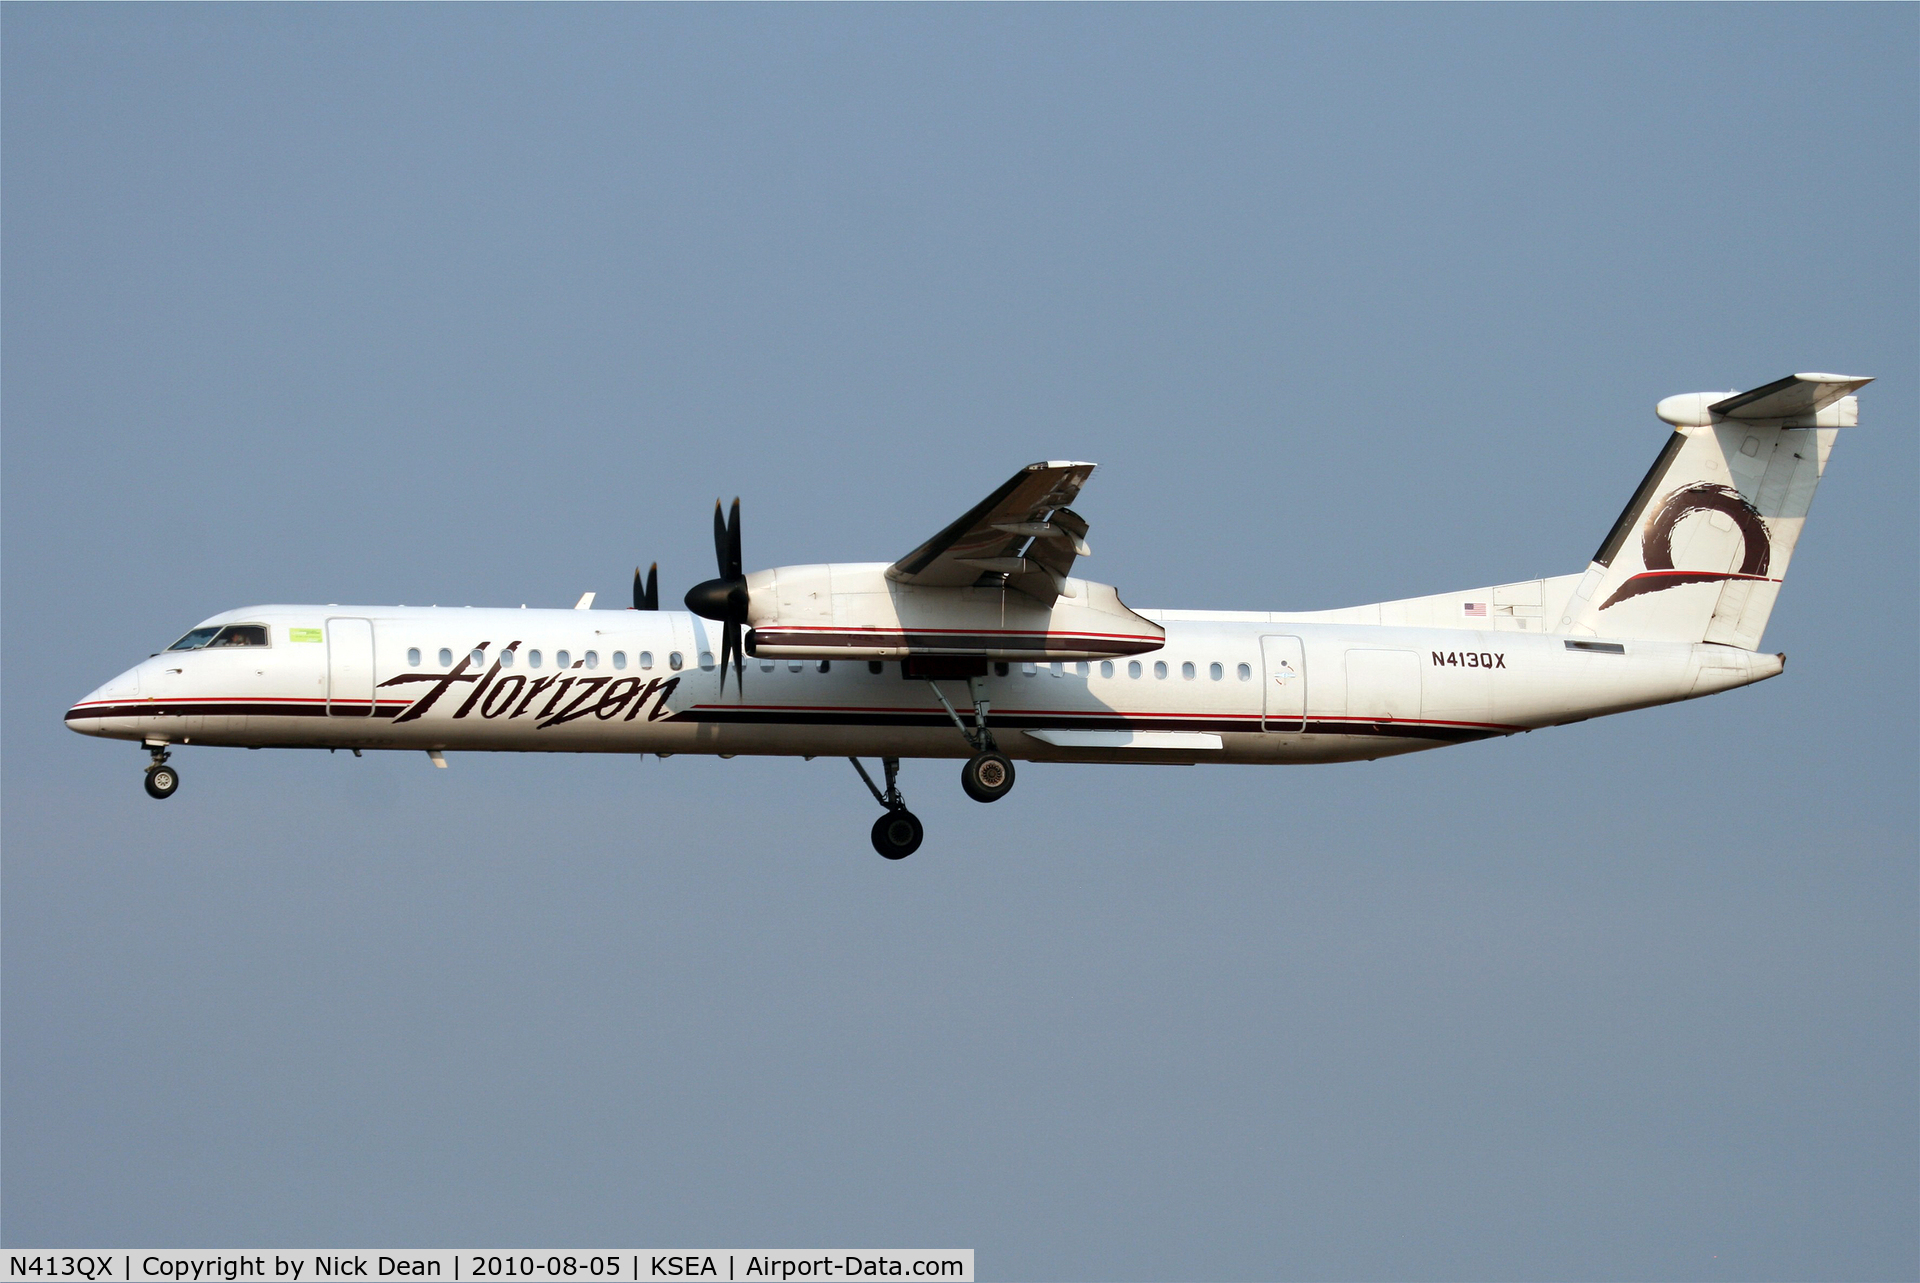 N413QX, 2002 Bombardier DHC-8-402 Dash 8 C/N 4060, KSEA